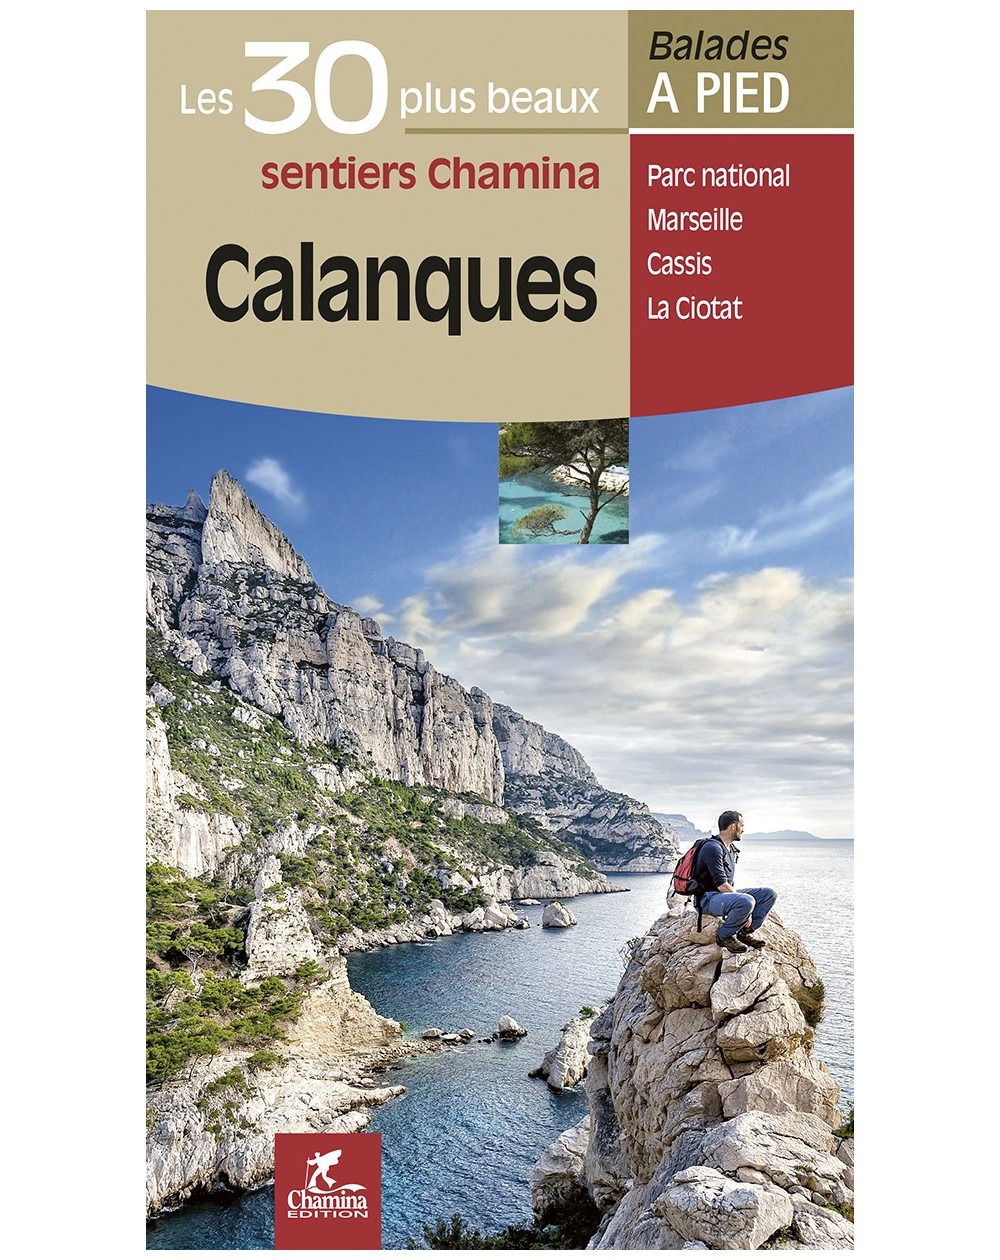 30-balades-calanques-chamina-edition-9782844663764